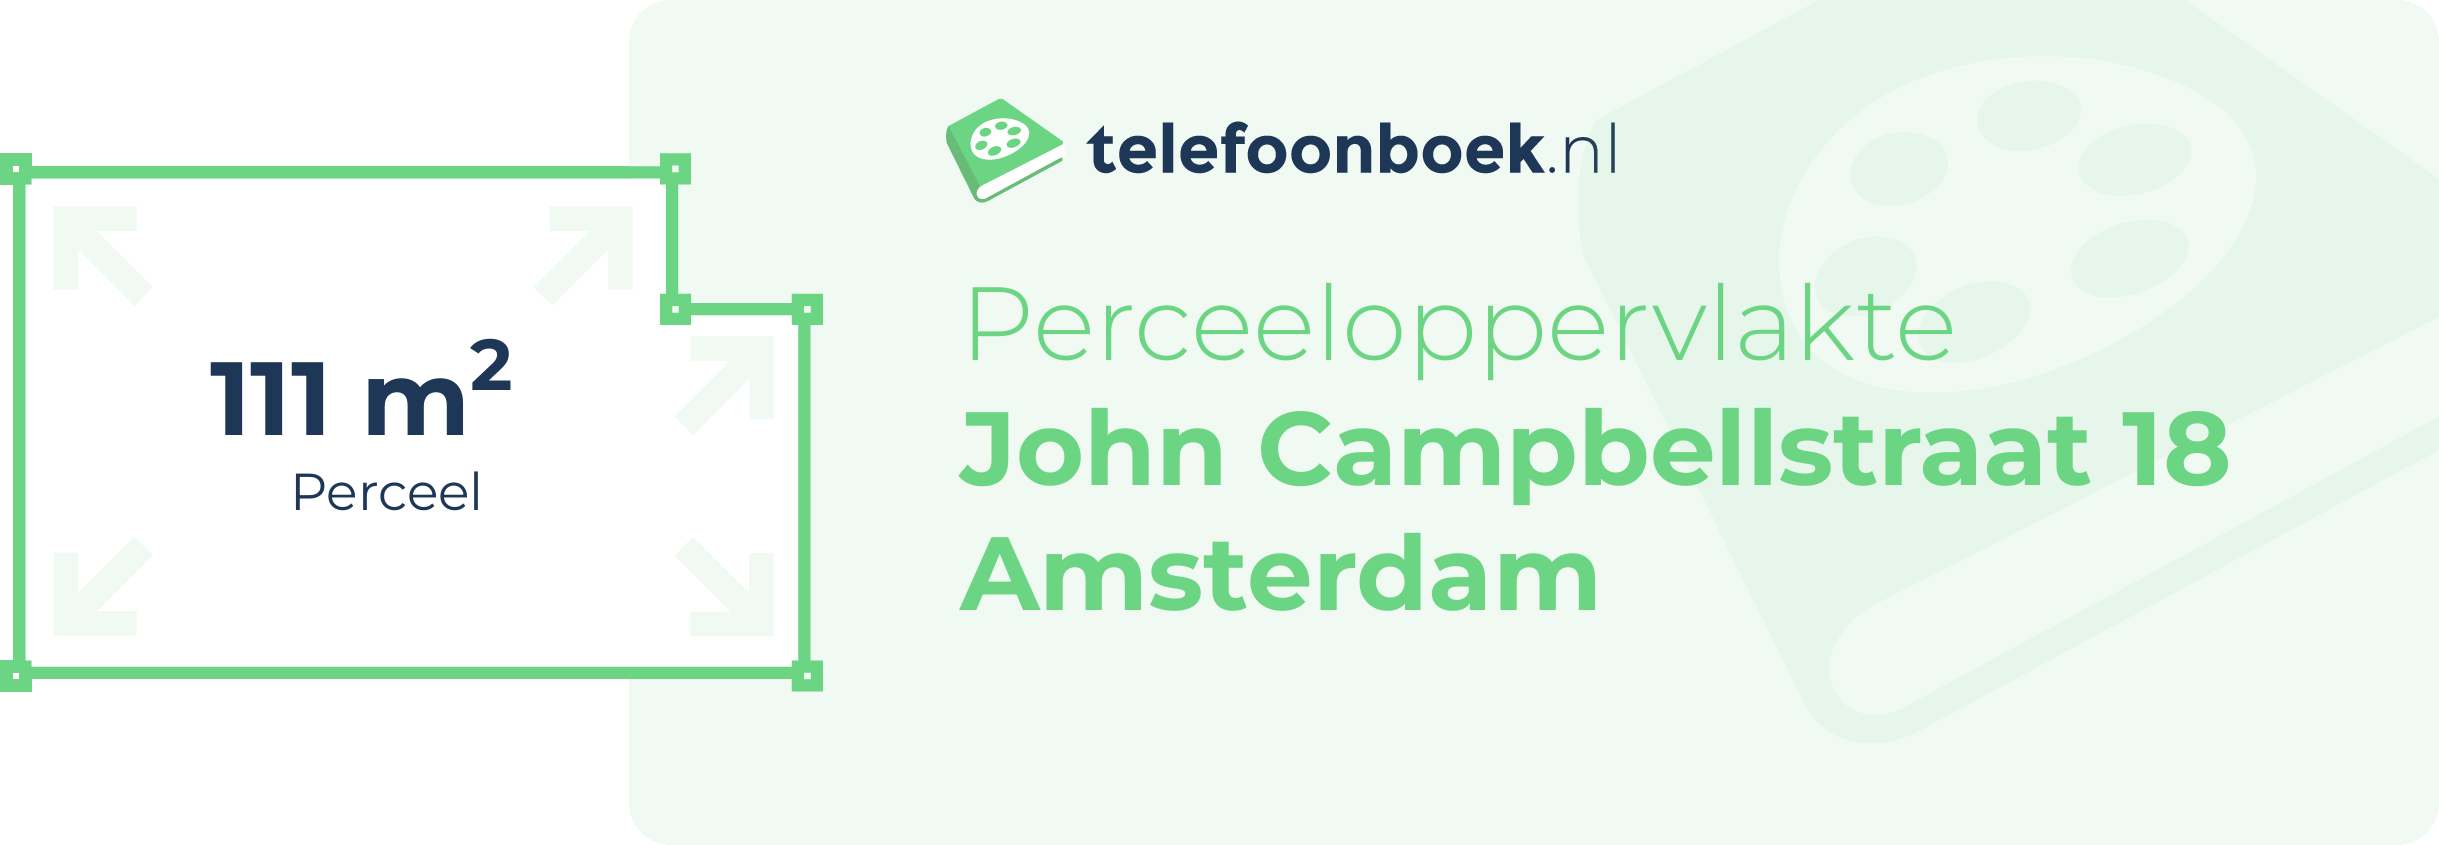 Perceeloppervlakte John Campbellstraat 18 Amsterdam